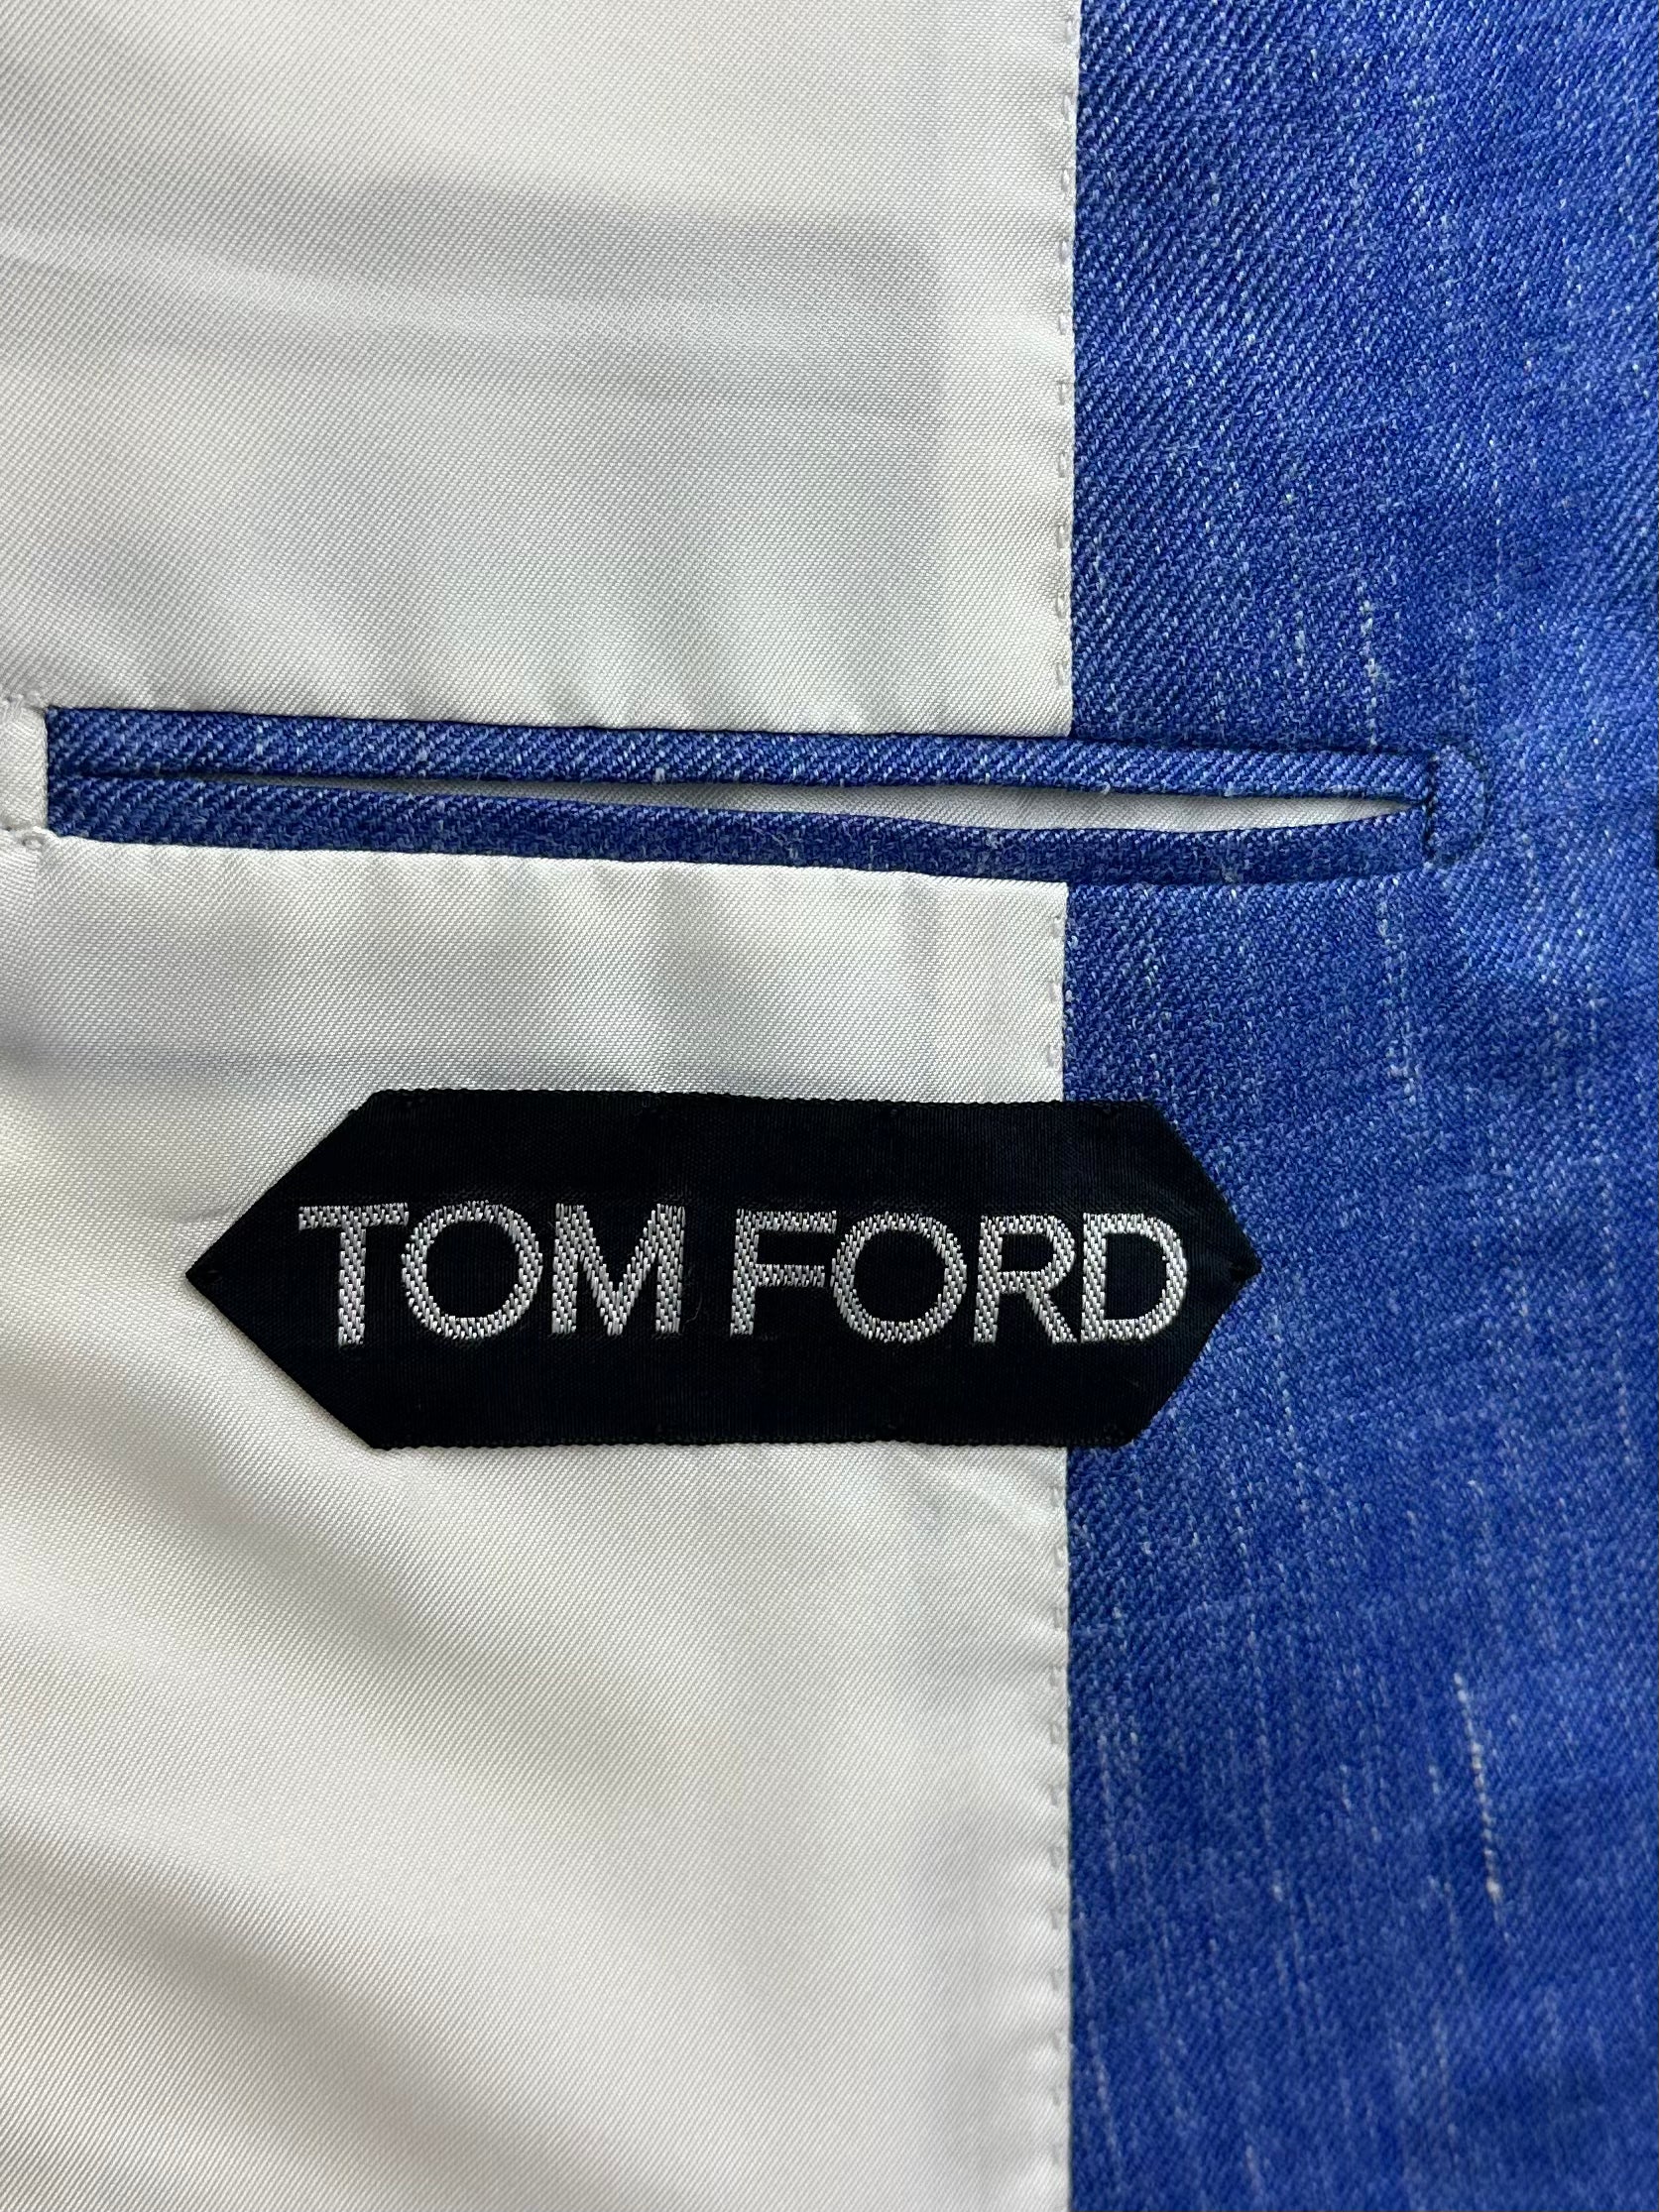 Tom Ford jasje van wol, zijde en linnen